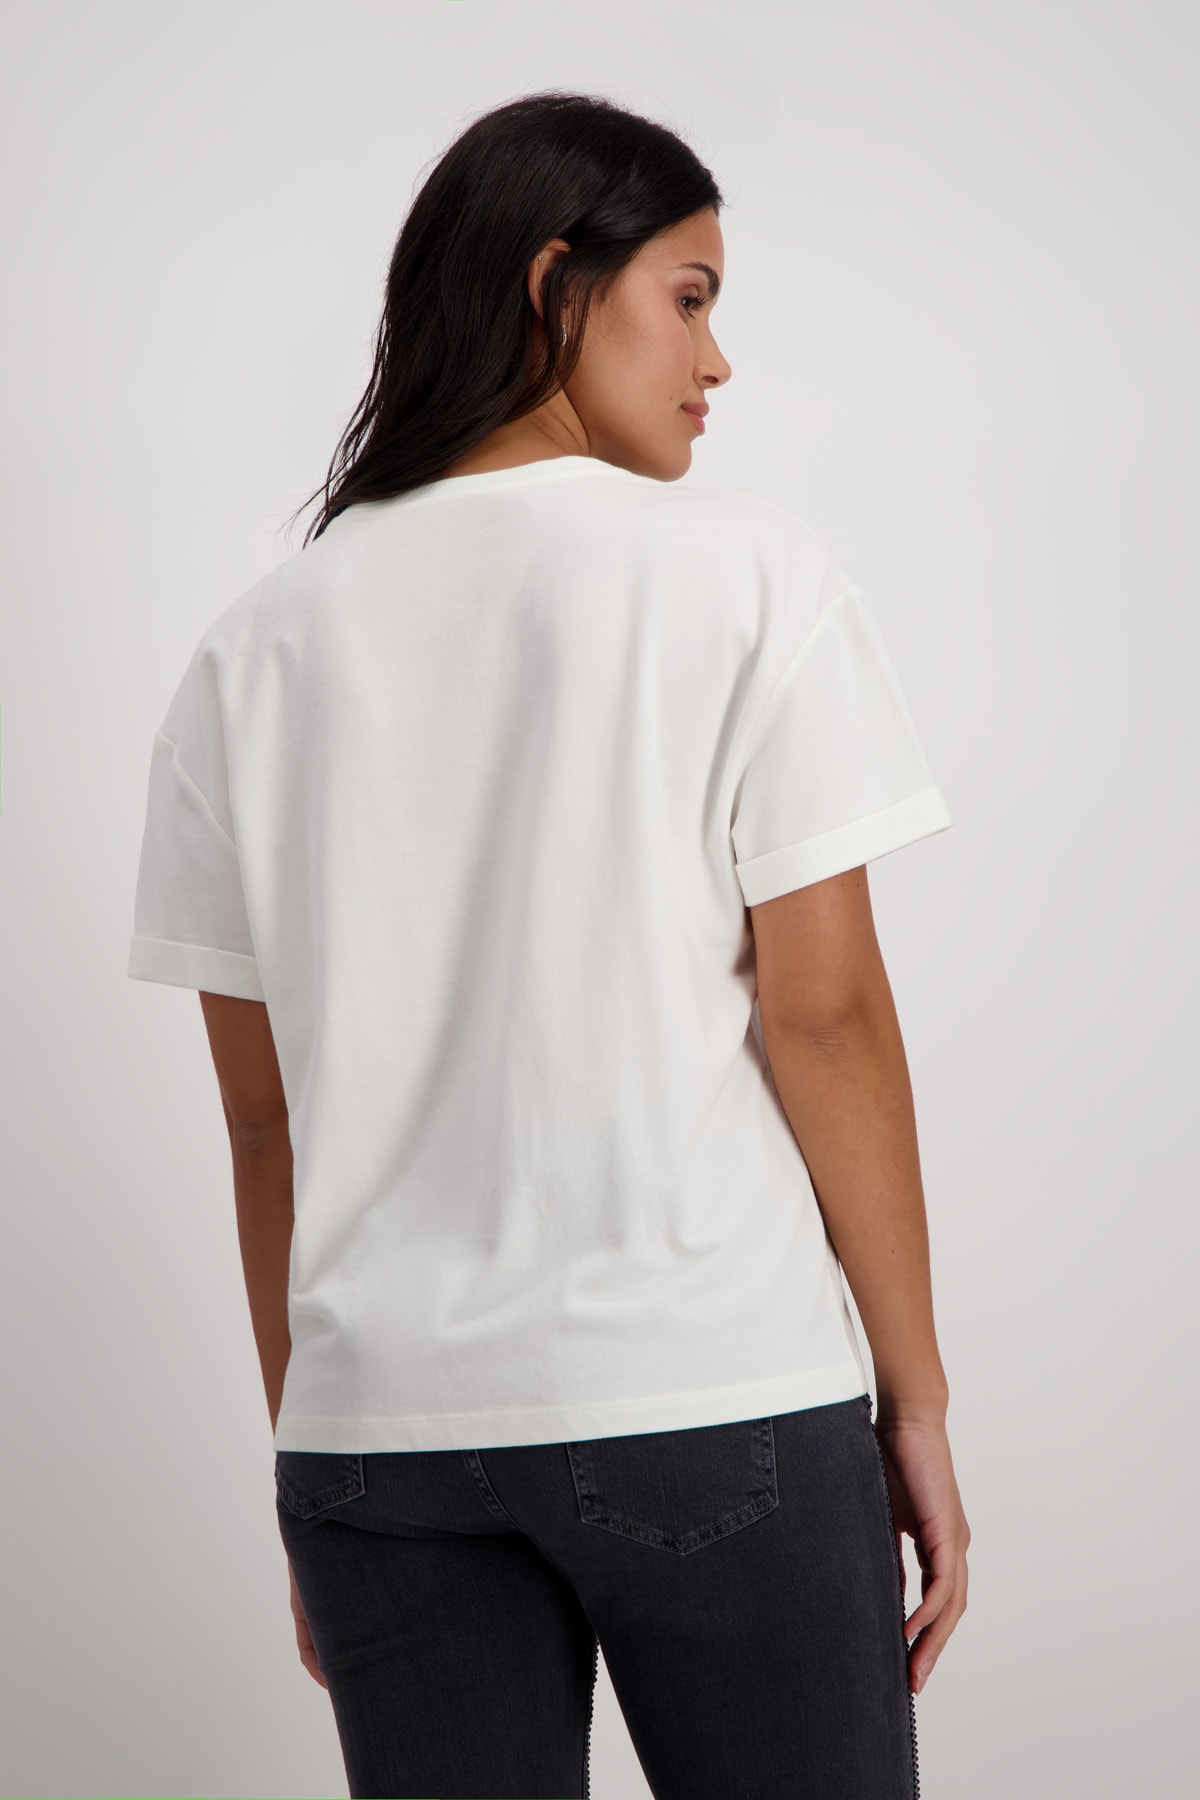 Tričko biela-vzor Monari